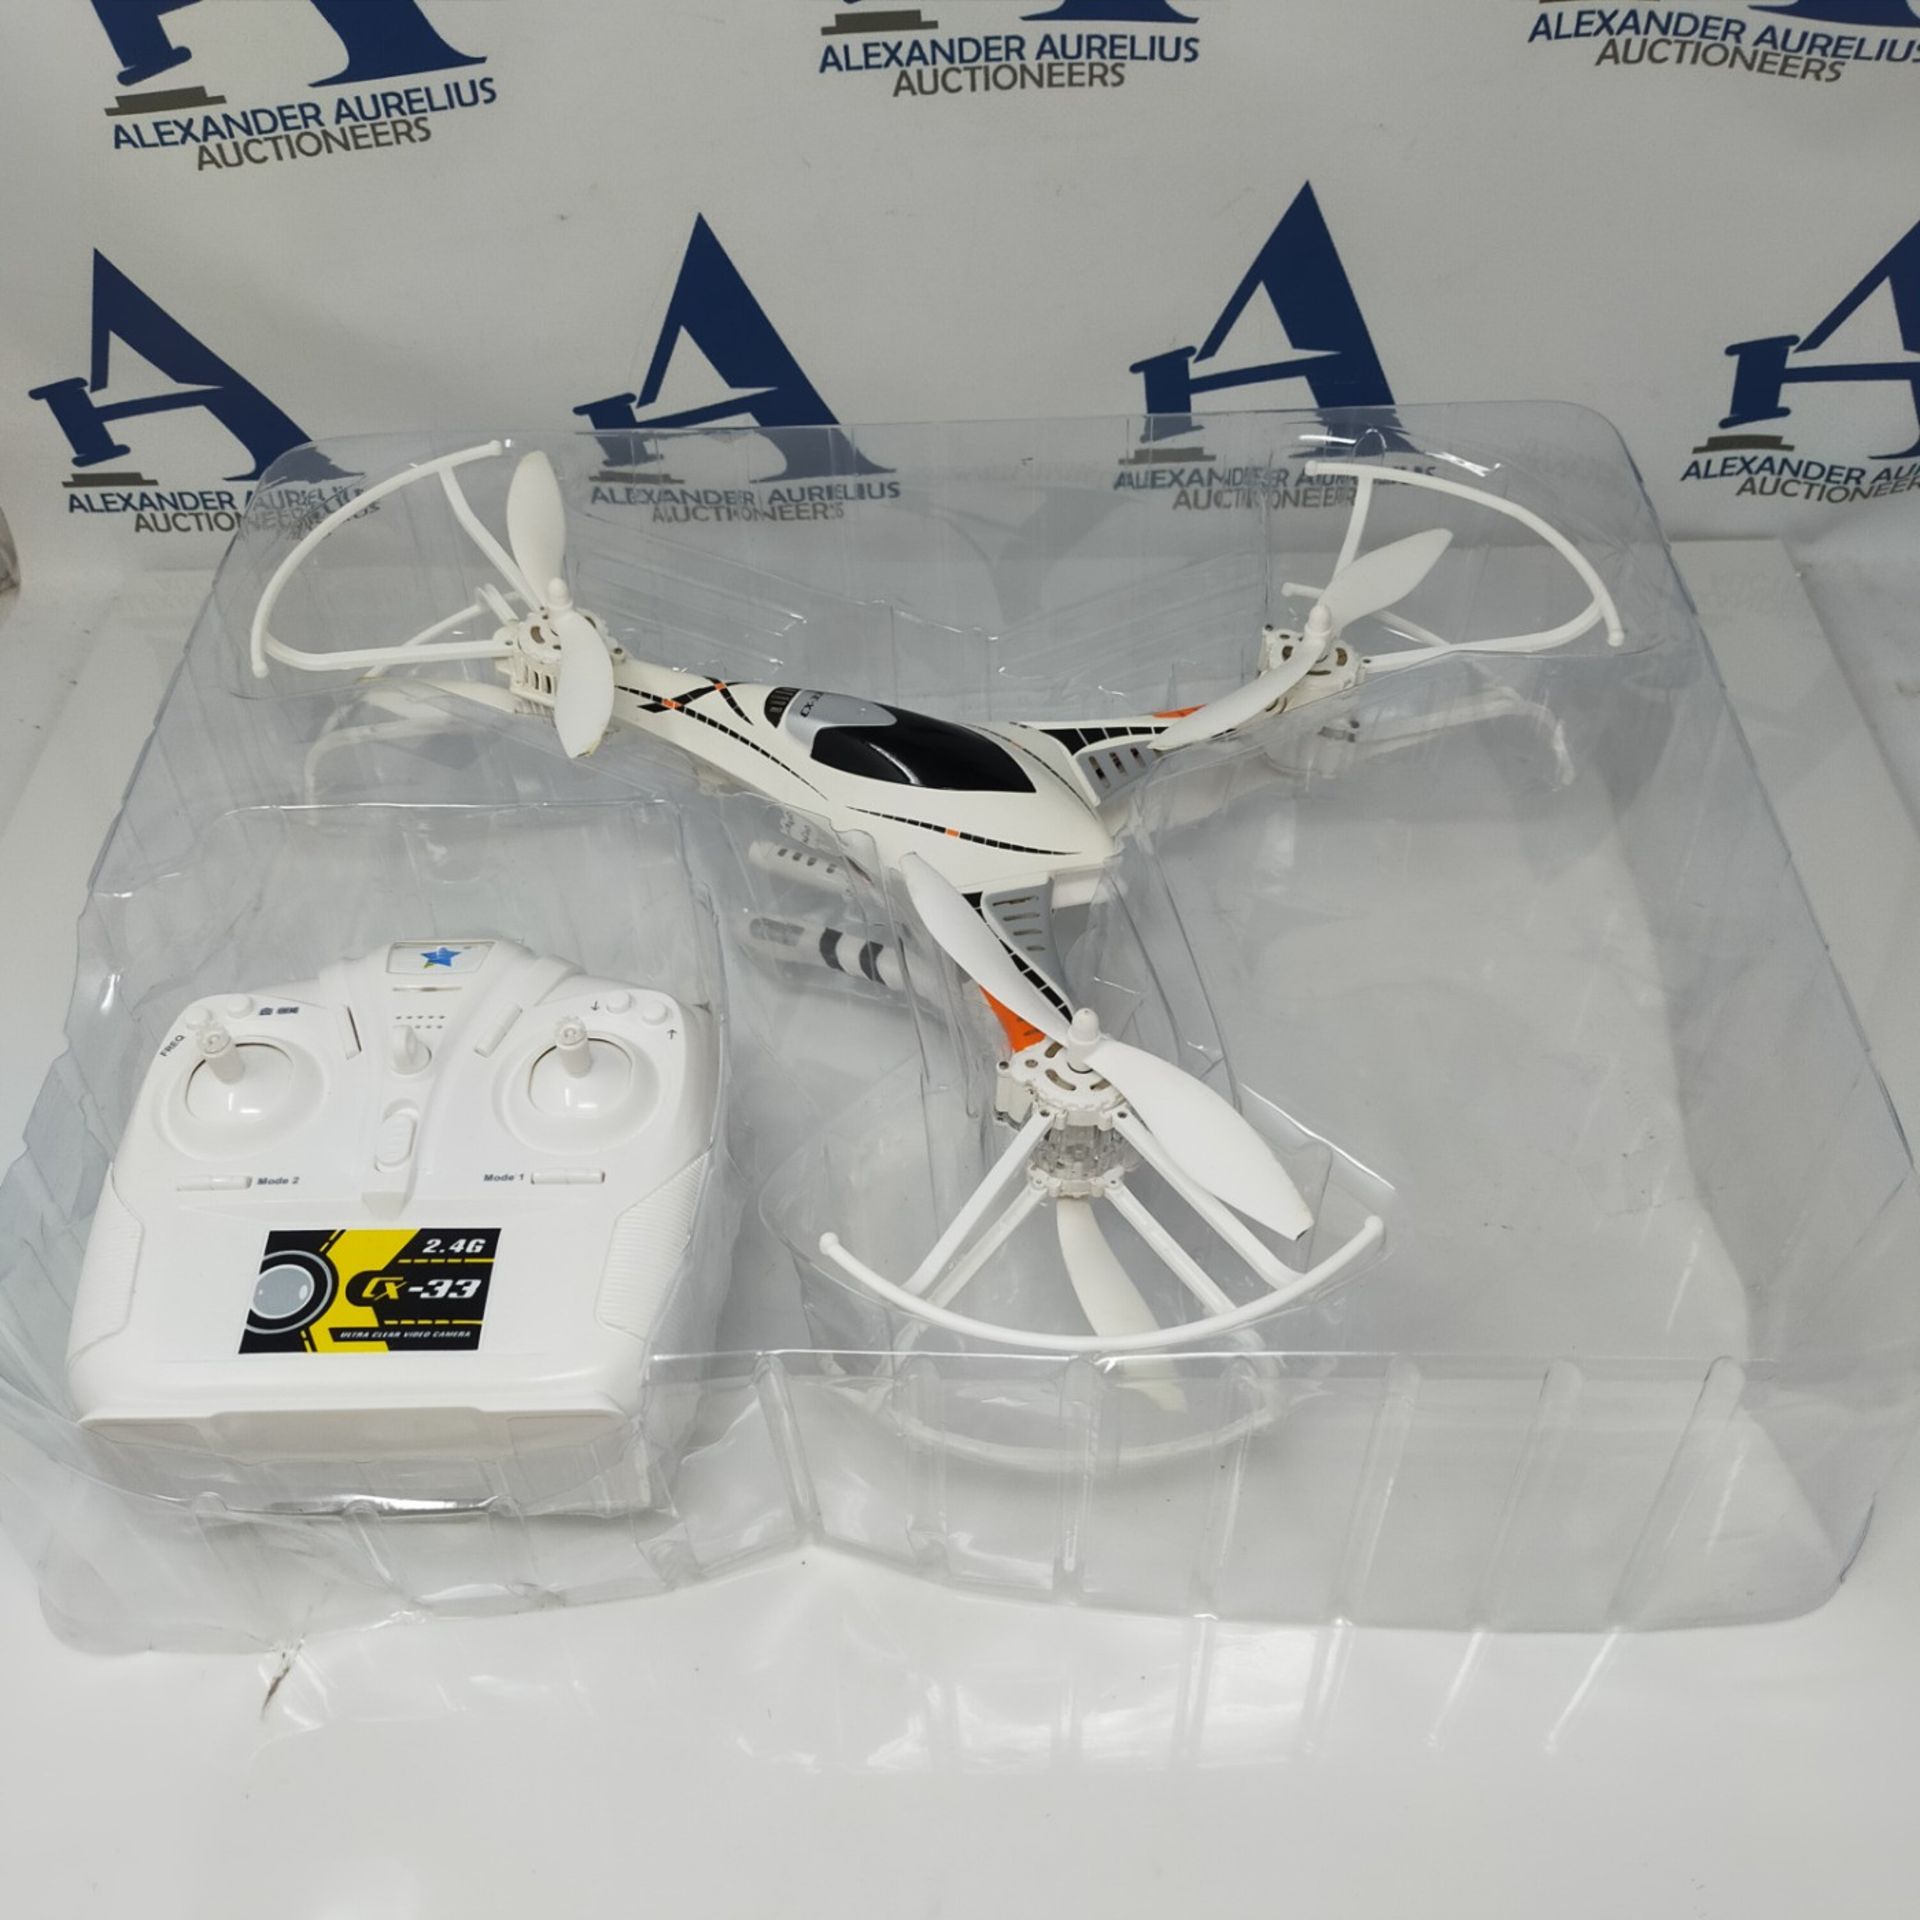 Tekk Drone Cx-33C Falcon Semi-Professional Drone with HD Camera - White - Image 3 of 3